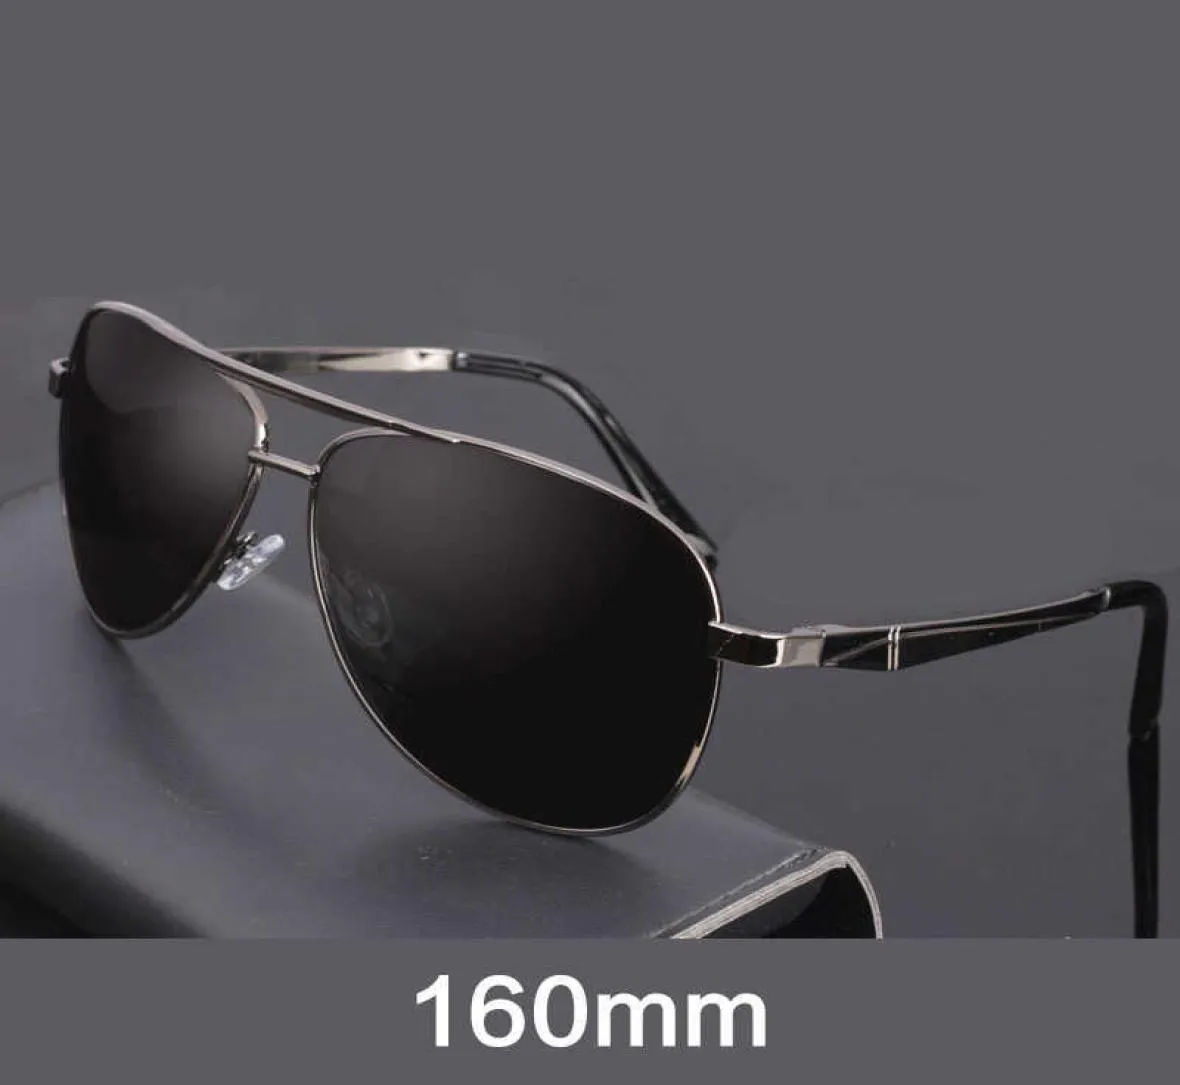 Evove 160 mm męskie okulary przeciwsłoneczne spolaryzowane ogromne ogromne okulary przeciwsłoneczne dla mężczyzny jadących antypolarne okulary Uv400 x08033456918